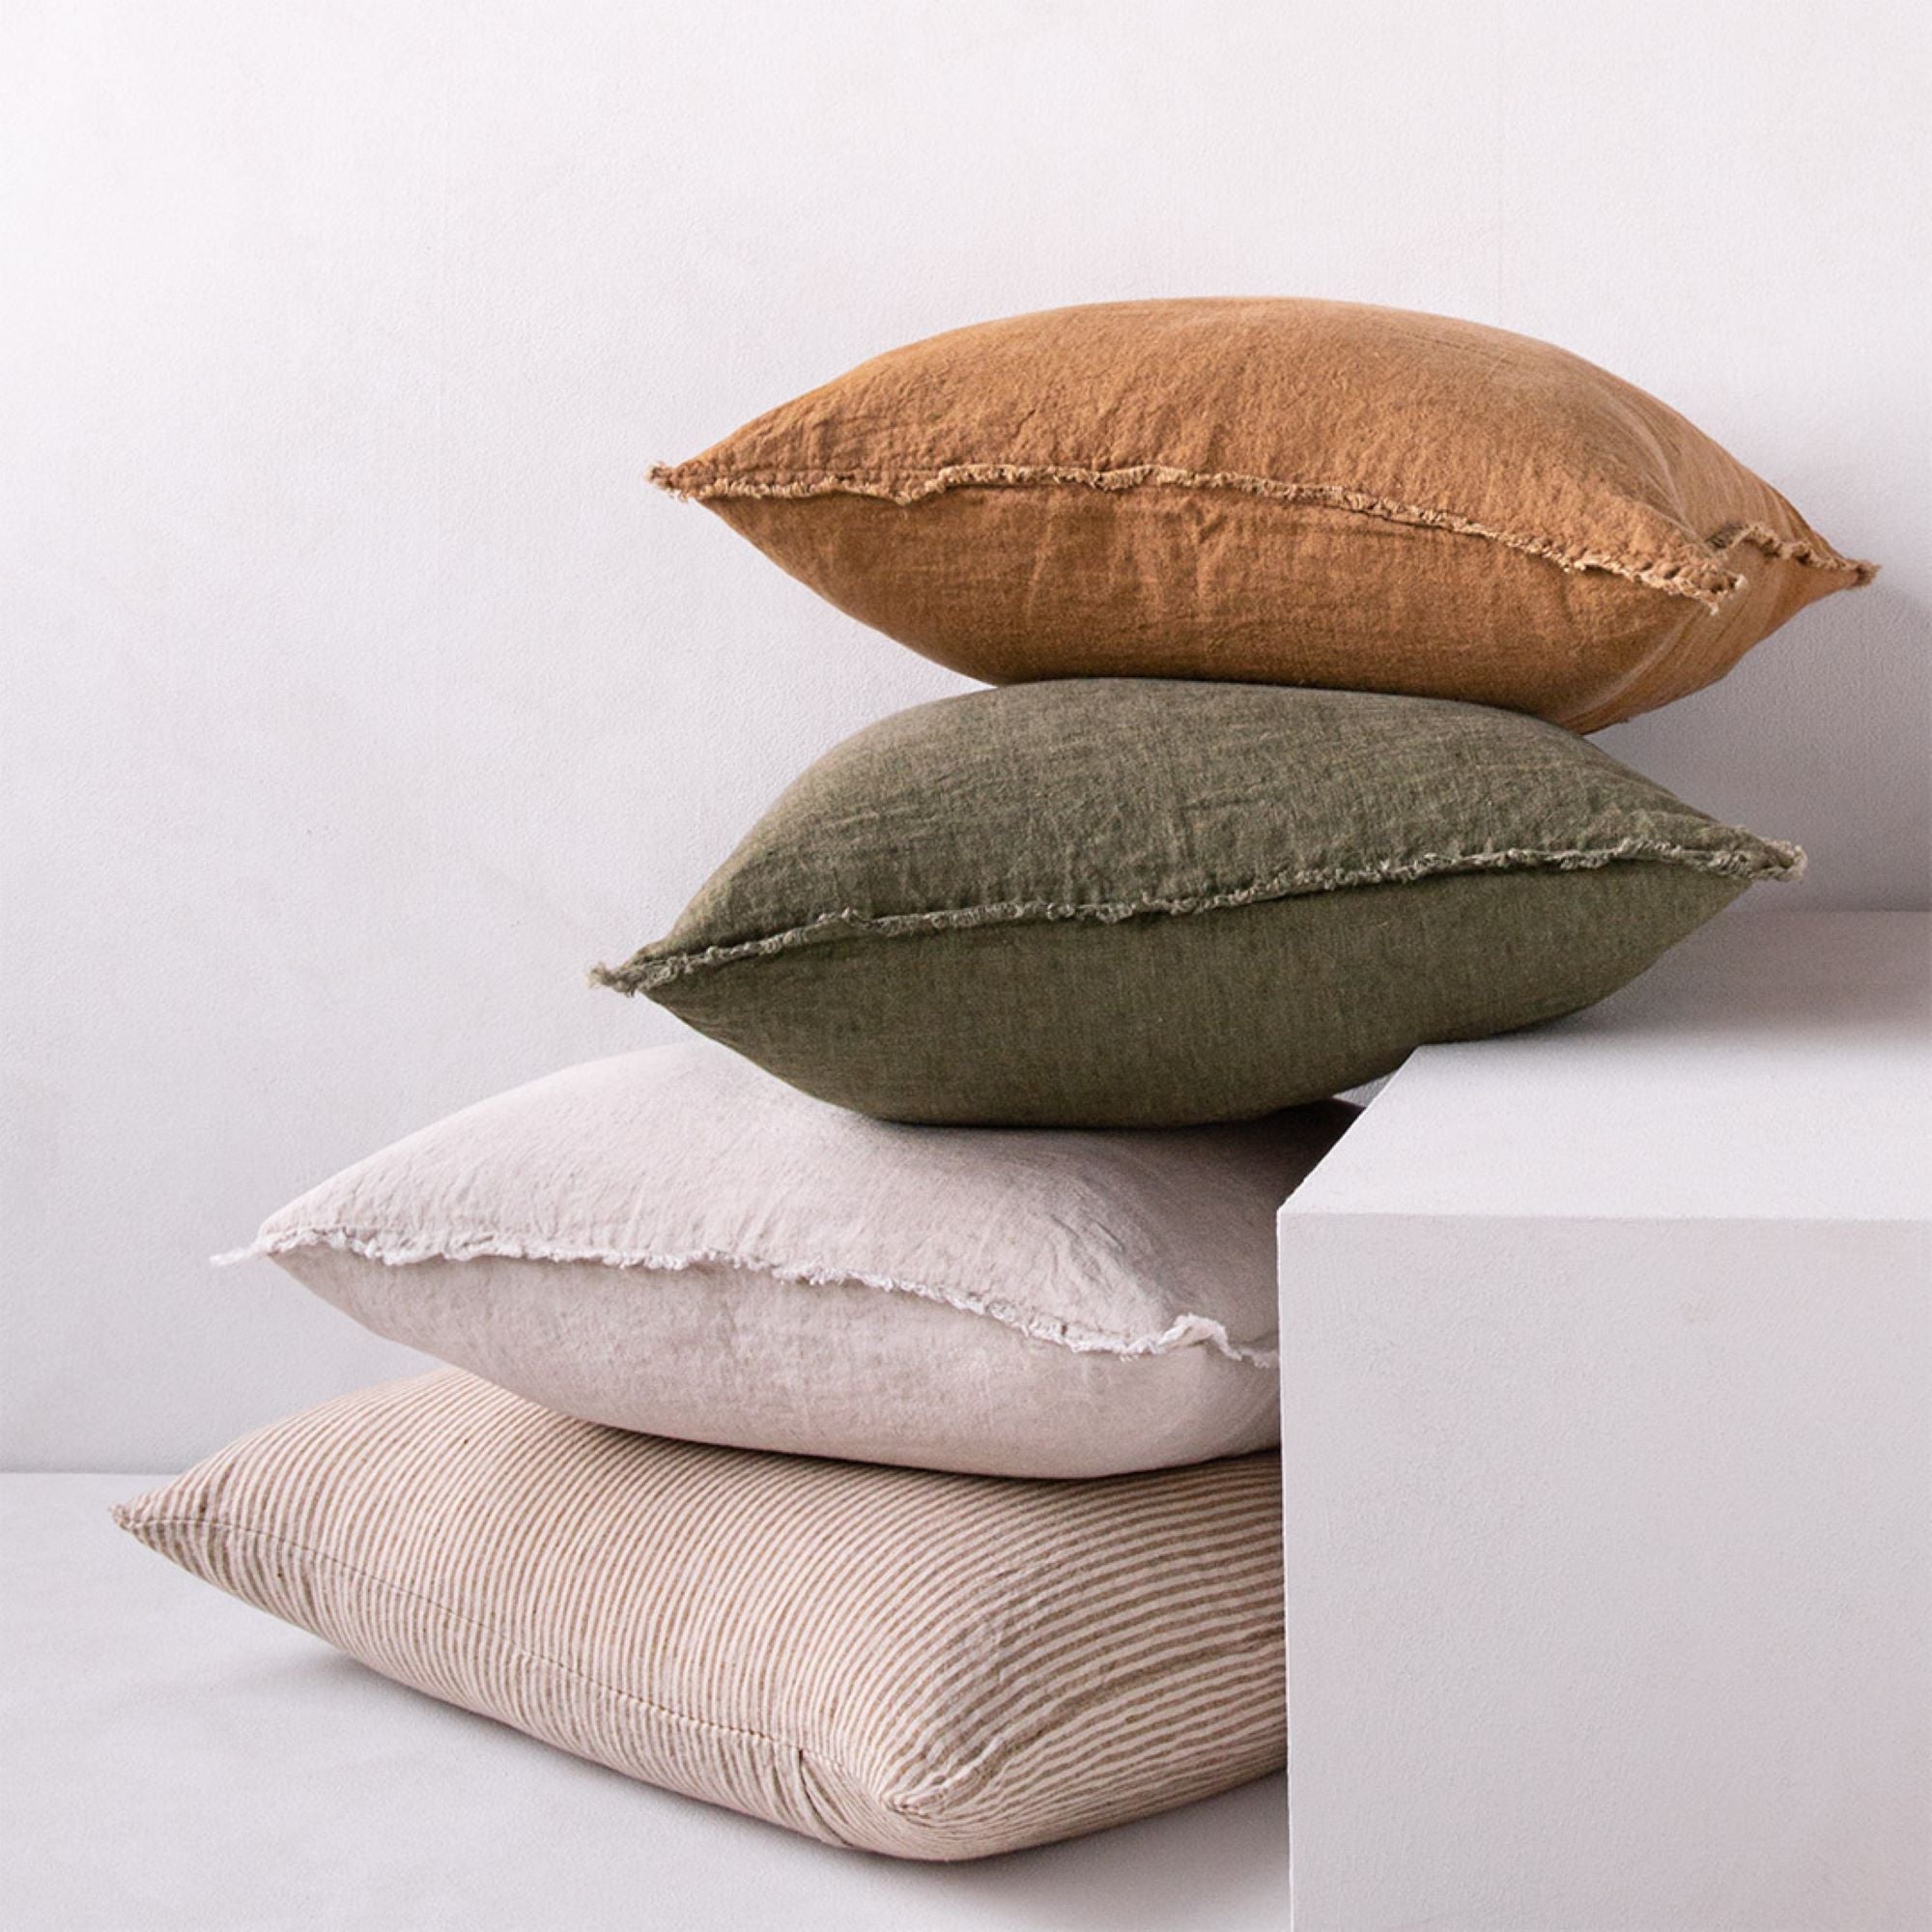 Linen Pillow Cover | Rust Tone | Hale Mercantile Co.